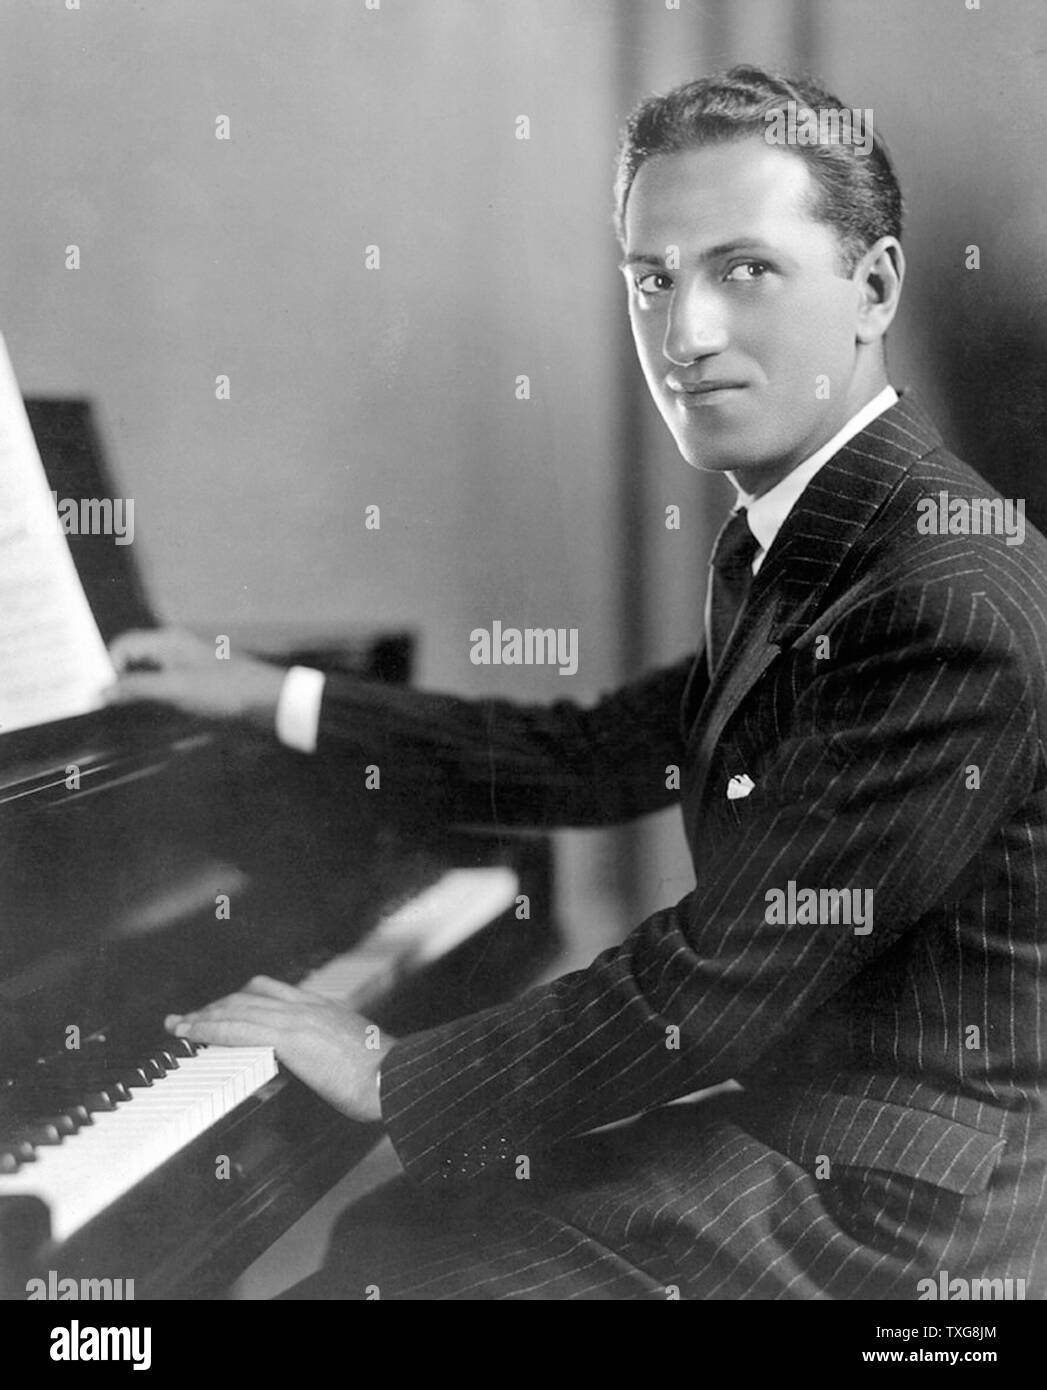 George Gershwin, American compositore e pianista. Gershwin le composizioni si estendesse sia classica e popolare di generi. Egli scrisse la maggior parte della sua voce e opere teatrali, compresi più di una dozzina di spettacoli di Broadway Foto Stock